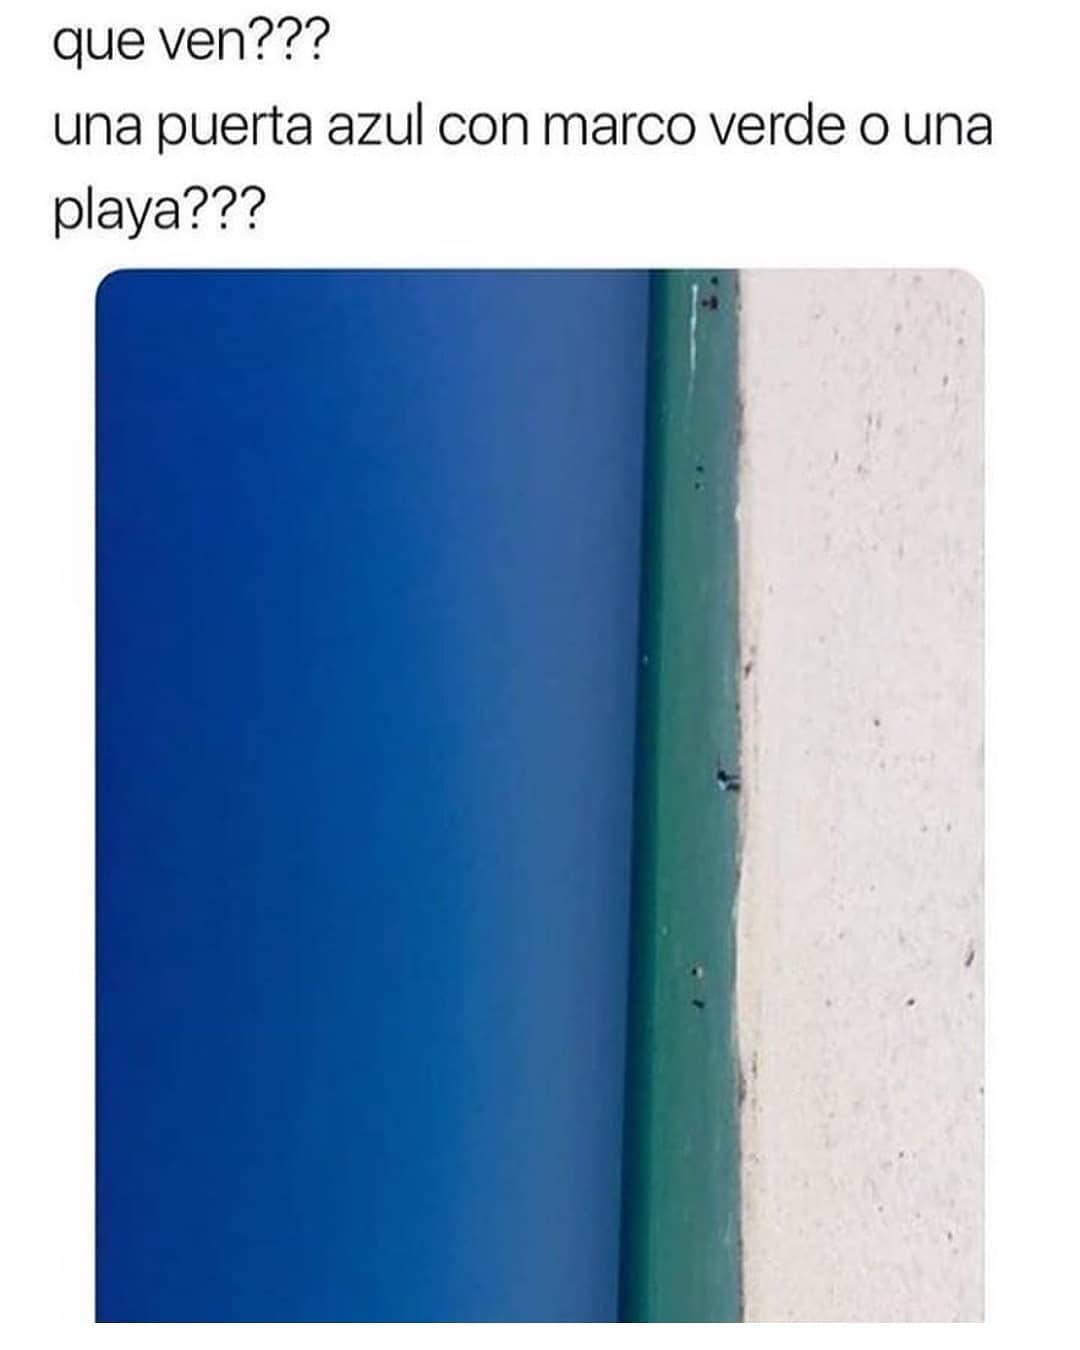 Que ven??? Una puerta azul con marco verde o una playa???